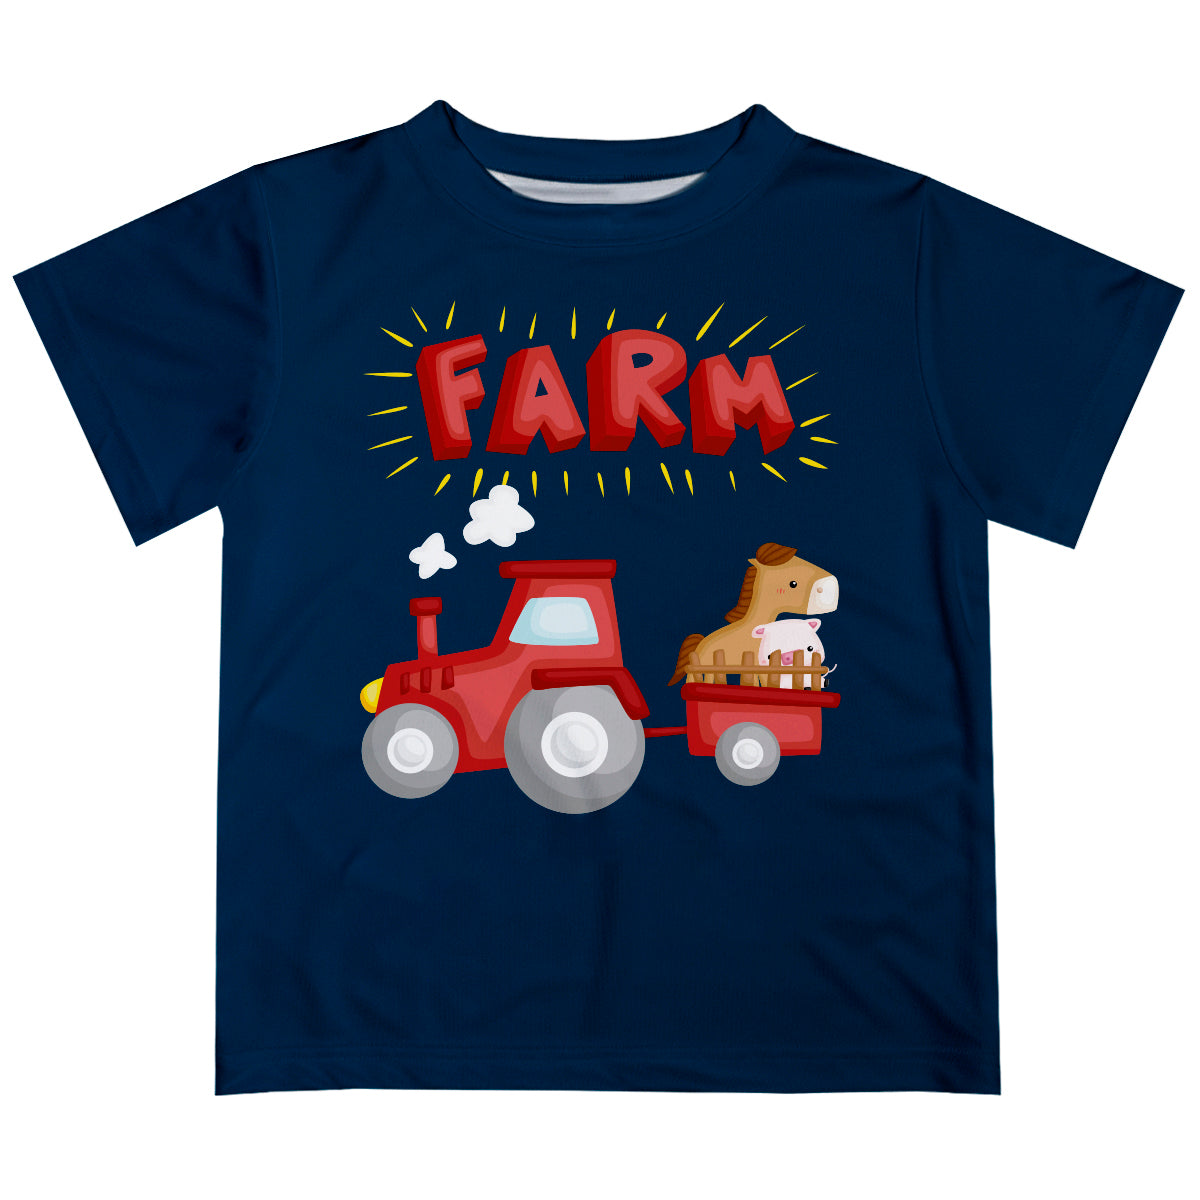 Navy boys farm short sleeve tee shirt with name - Wimziy&Co.